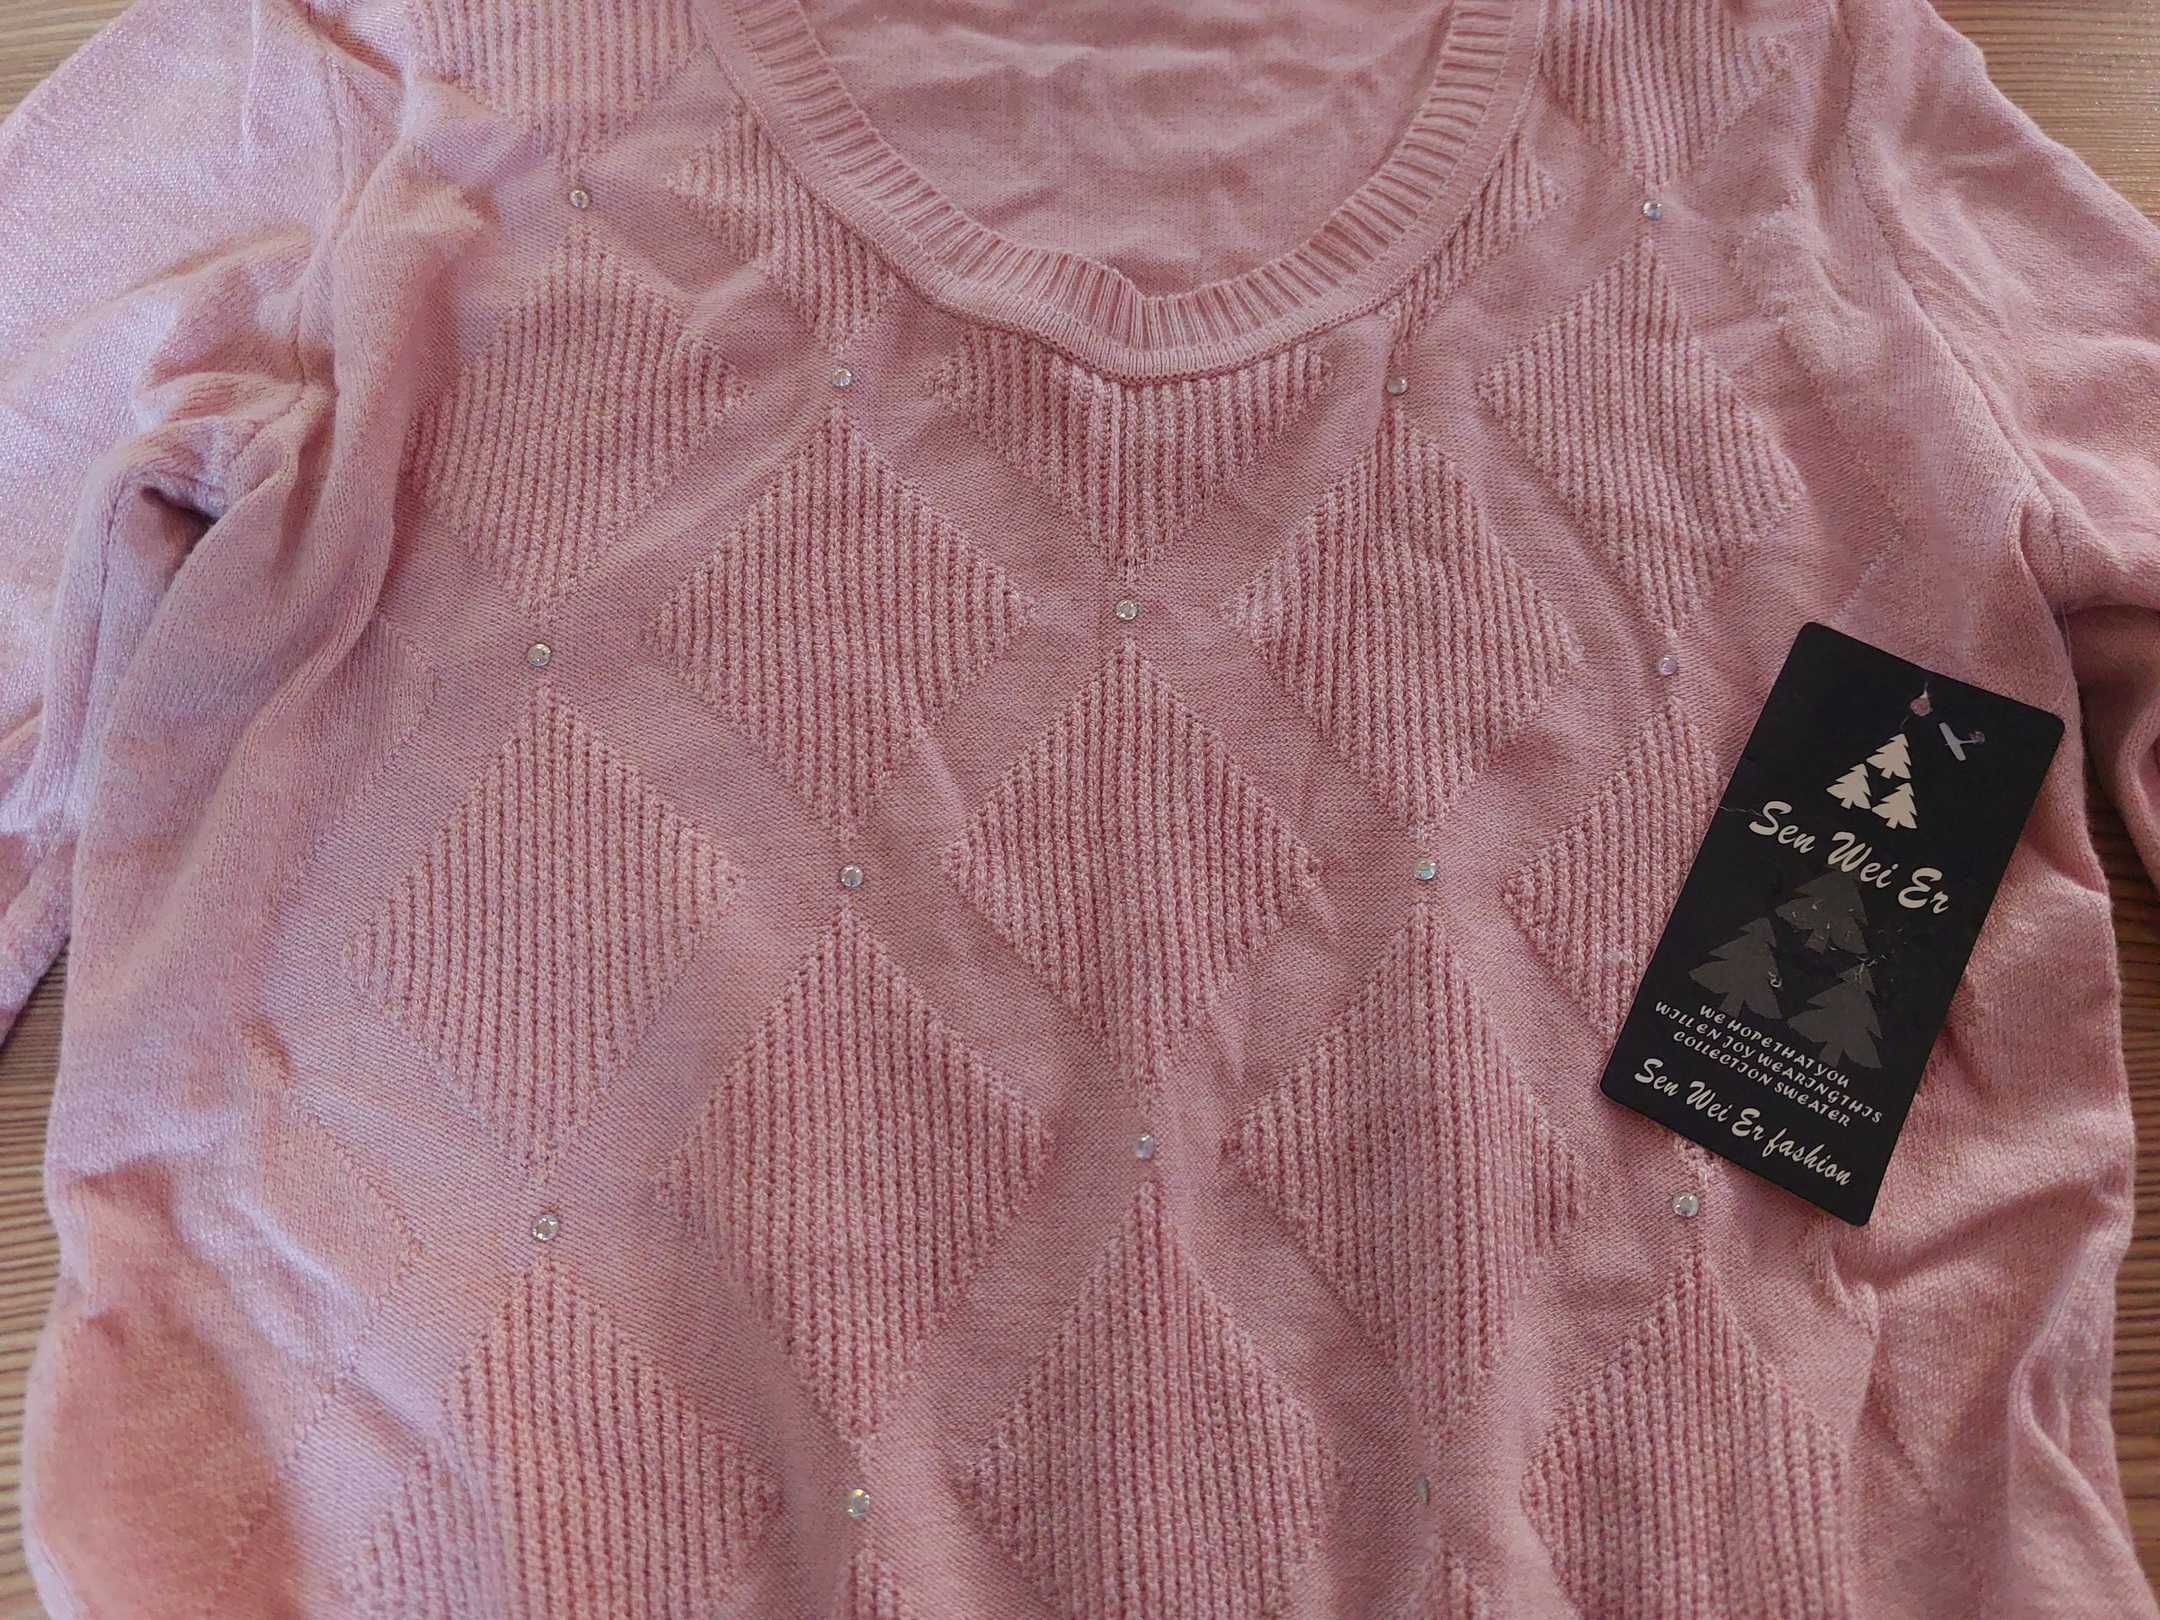 Кофта свитер коралловый и розовый размер 40-42